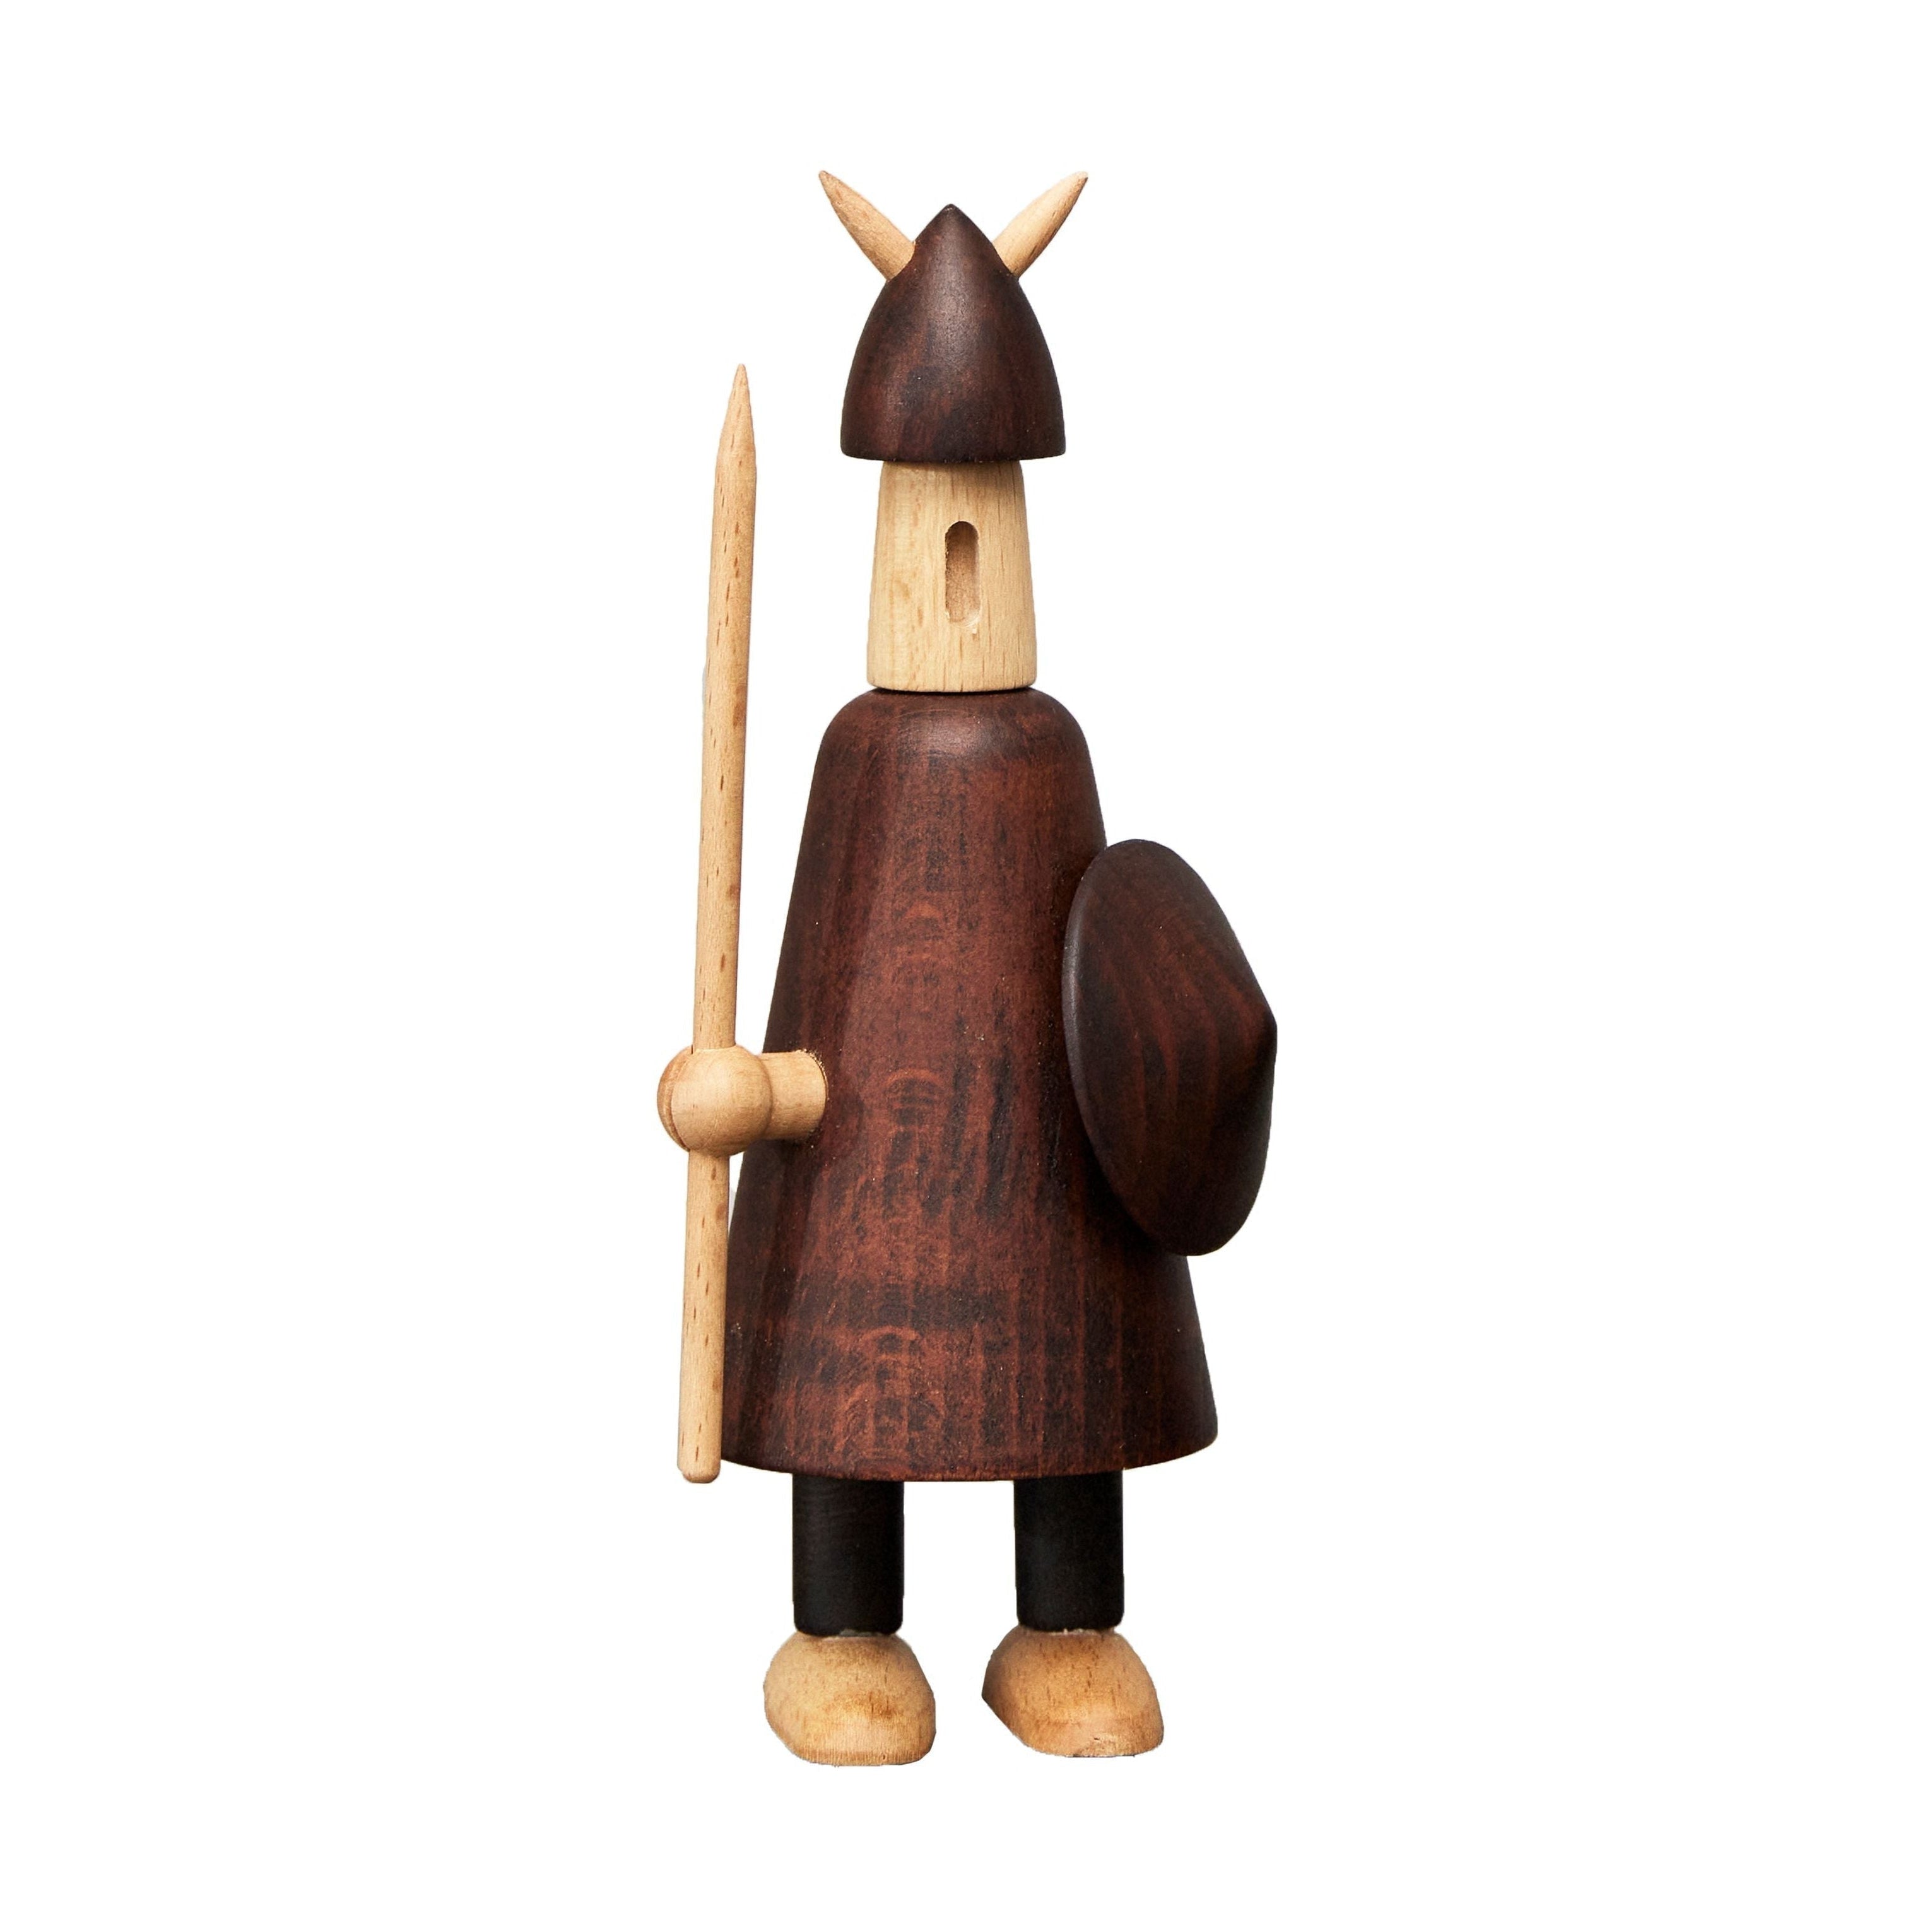 Andersen Furniture De vikingen van de houten figuur van Denemarken, groot